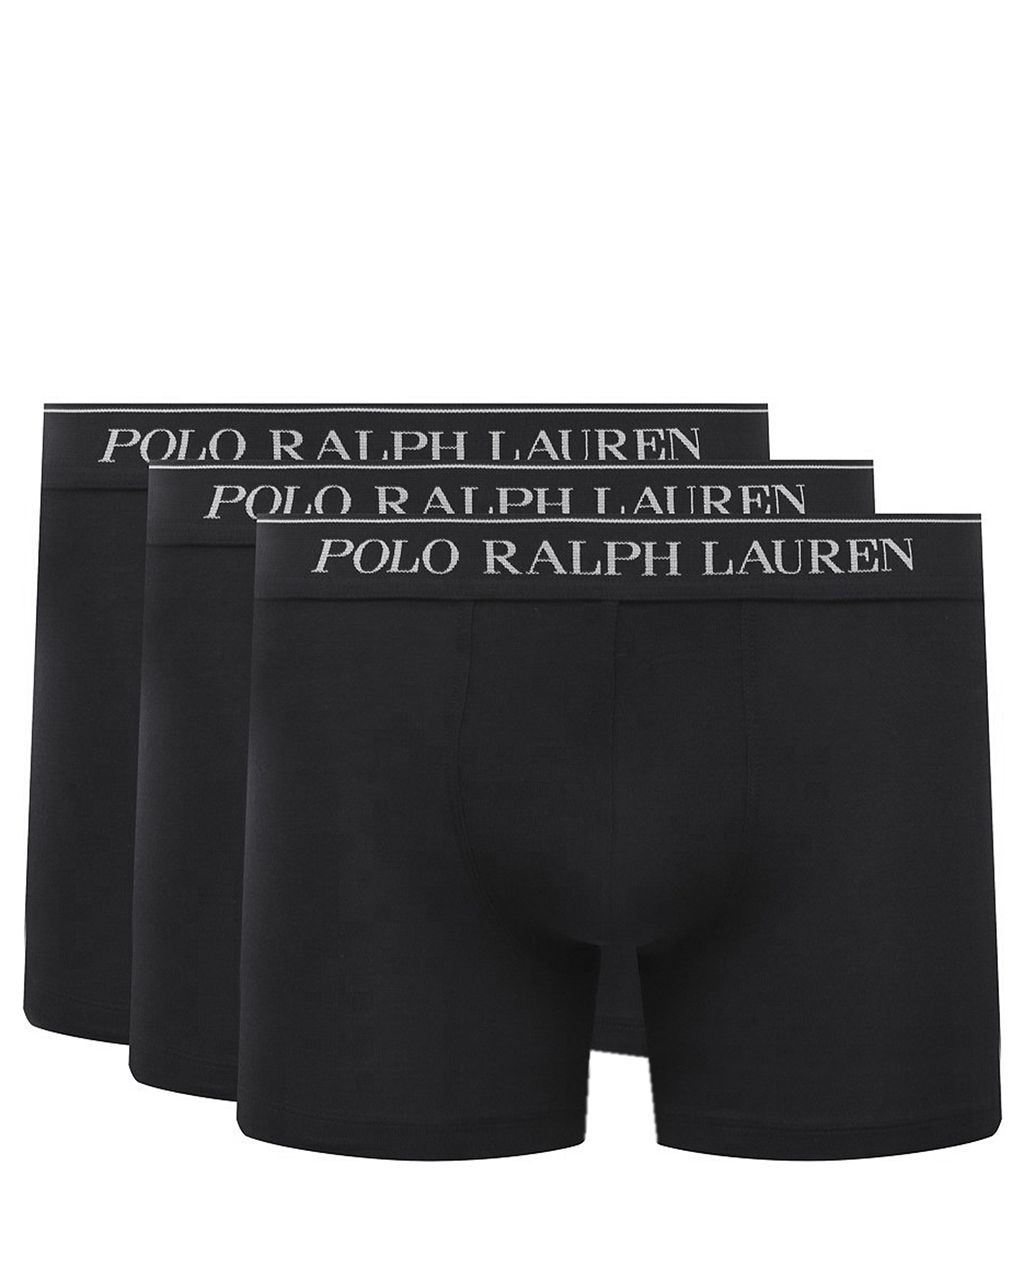 Polo Ralph Lauren Boxershort Zwart 078605-001-L